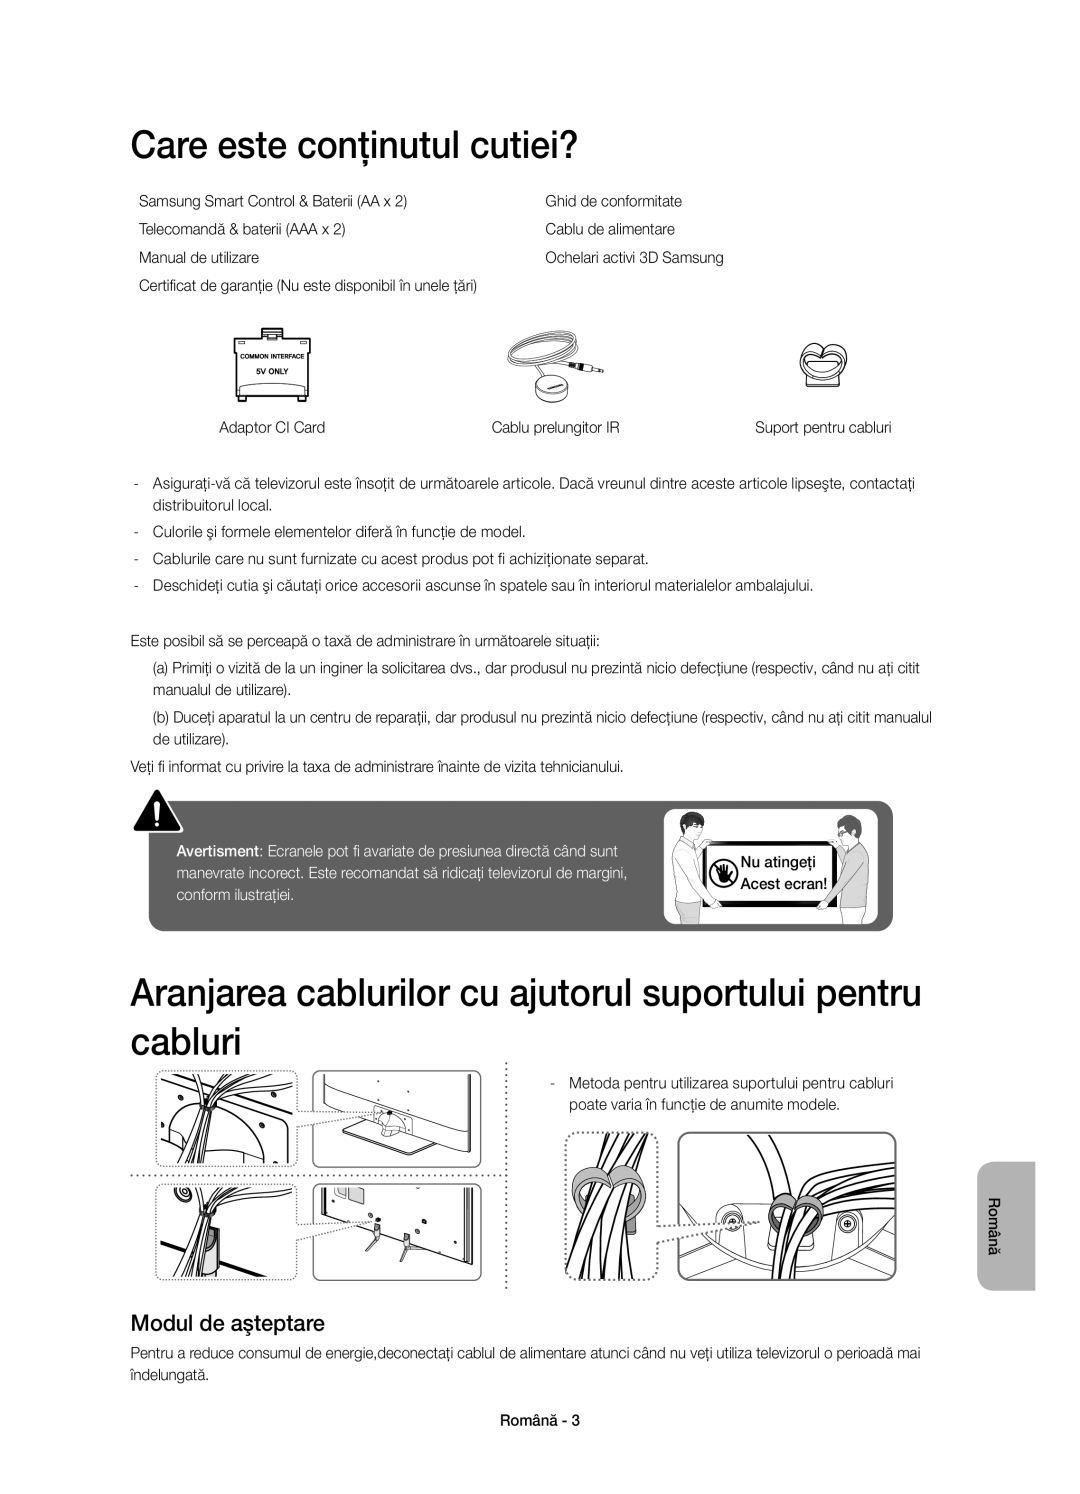 Samsung UE48H6500STXXH manual Care este conţinutul cutiei?, Aranjarea cablurilor cu ajutorul suportului pentru cabluri 